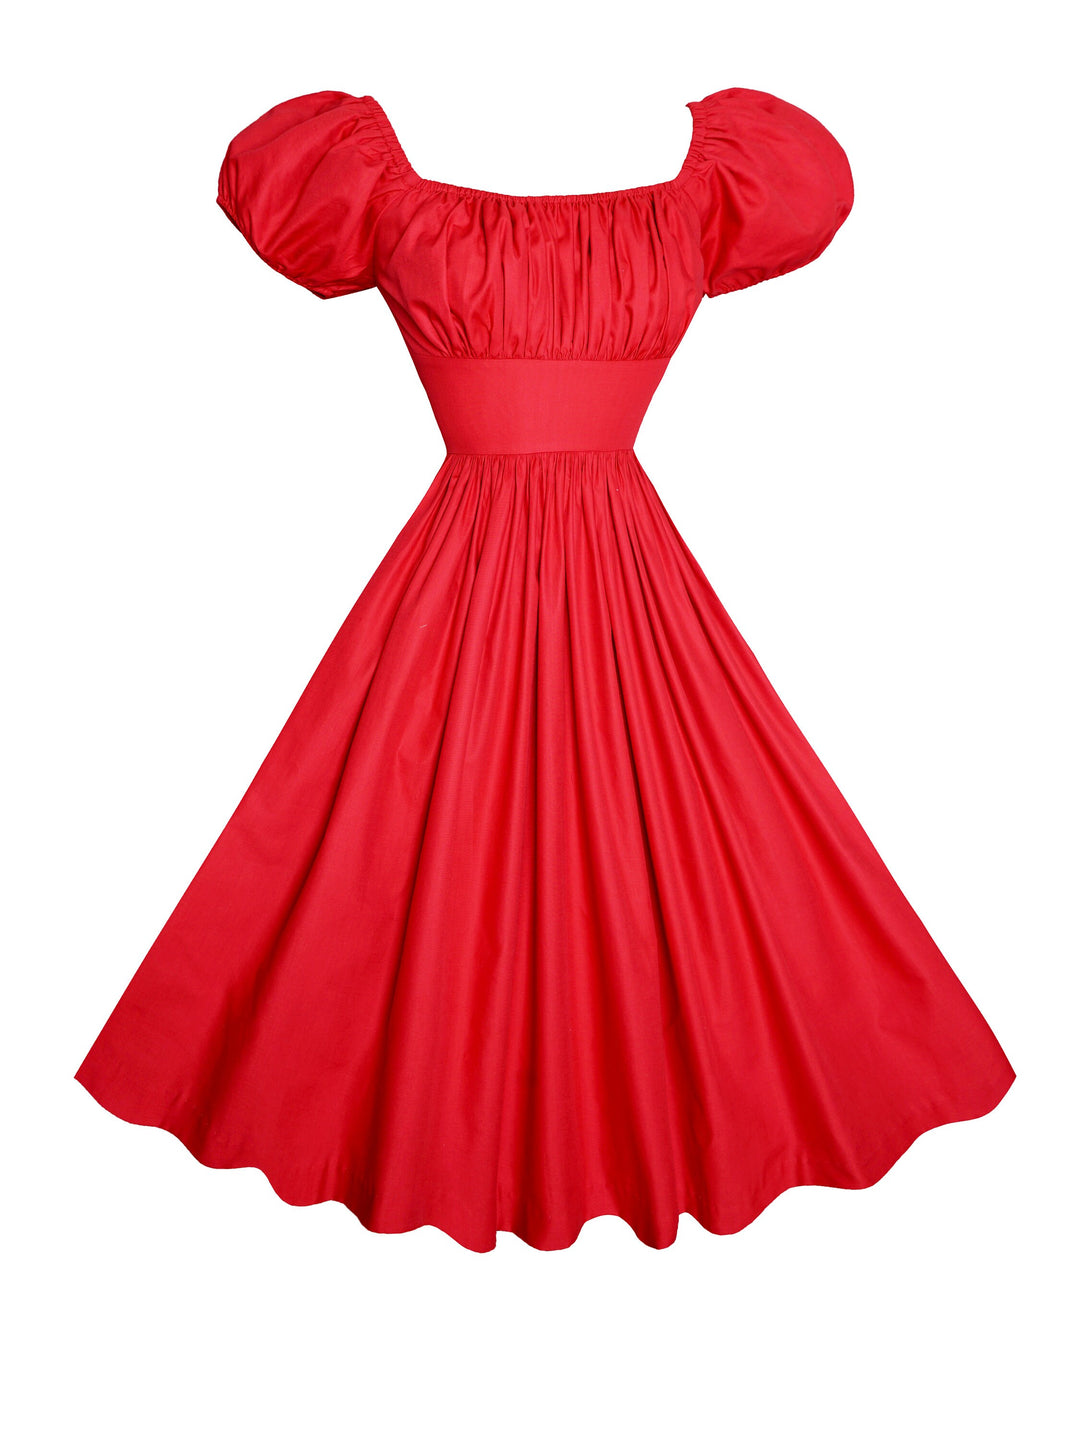 MTO - Loretta Dress in Cardinal Red Cotton